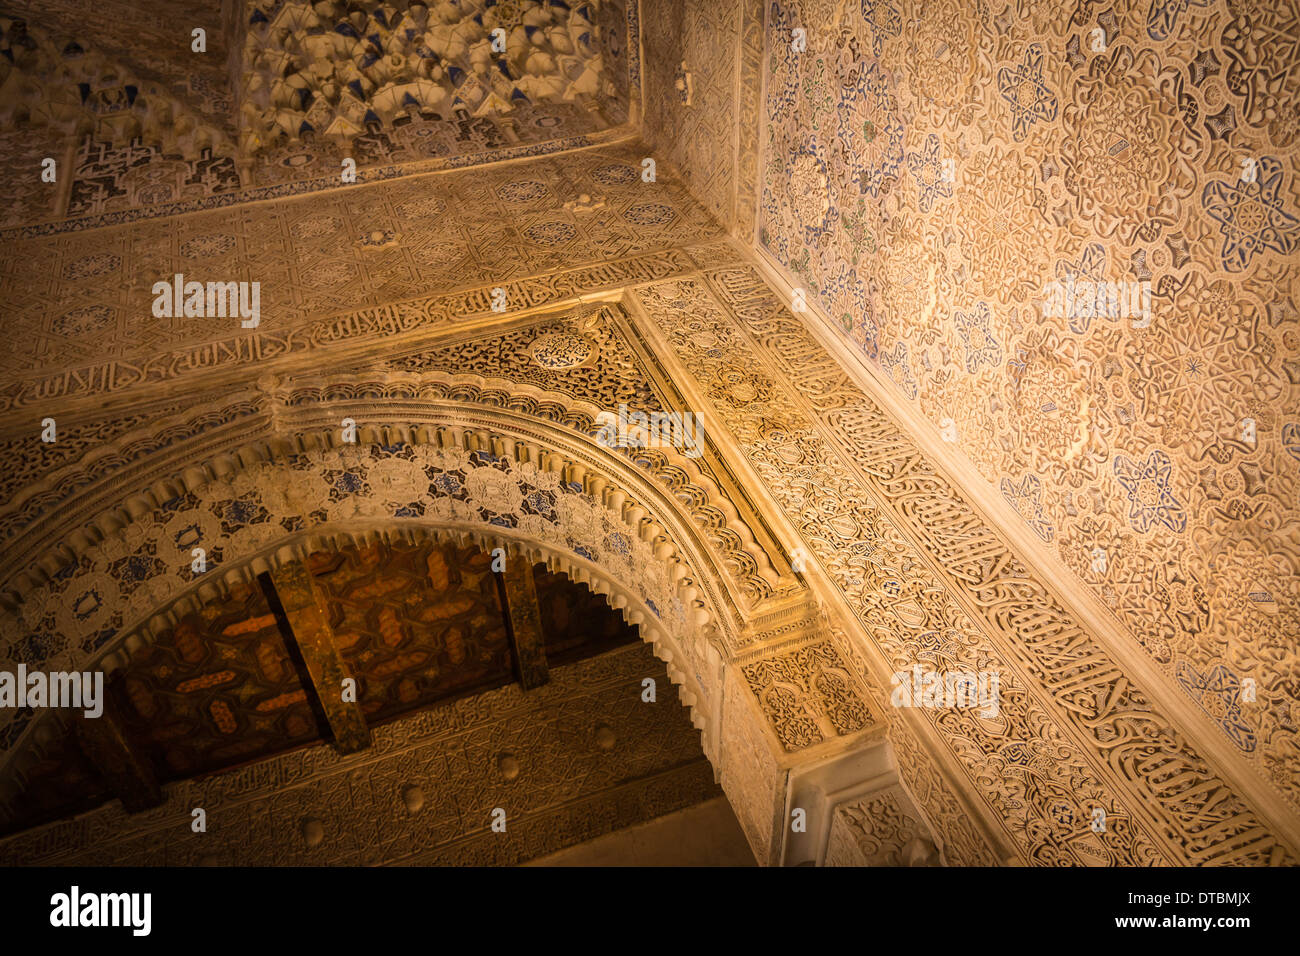 Einer der vielen kunstvollen Strukturen im schönen Palast und Gärten im Alhambra in Granada, Andalusien, Südspanien. Stockfoto